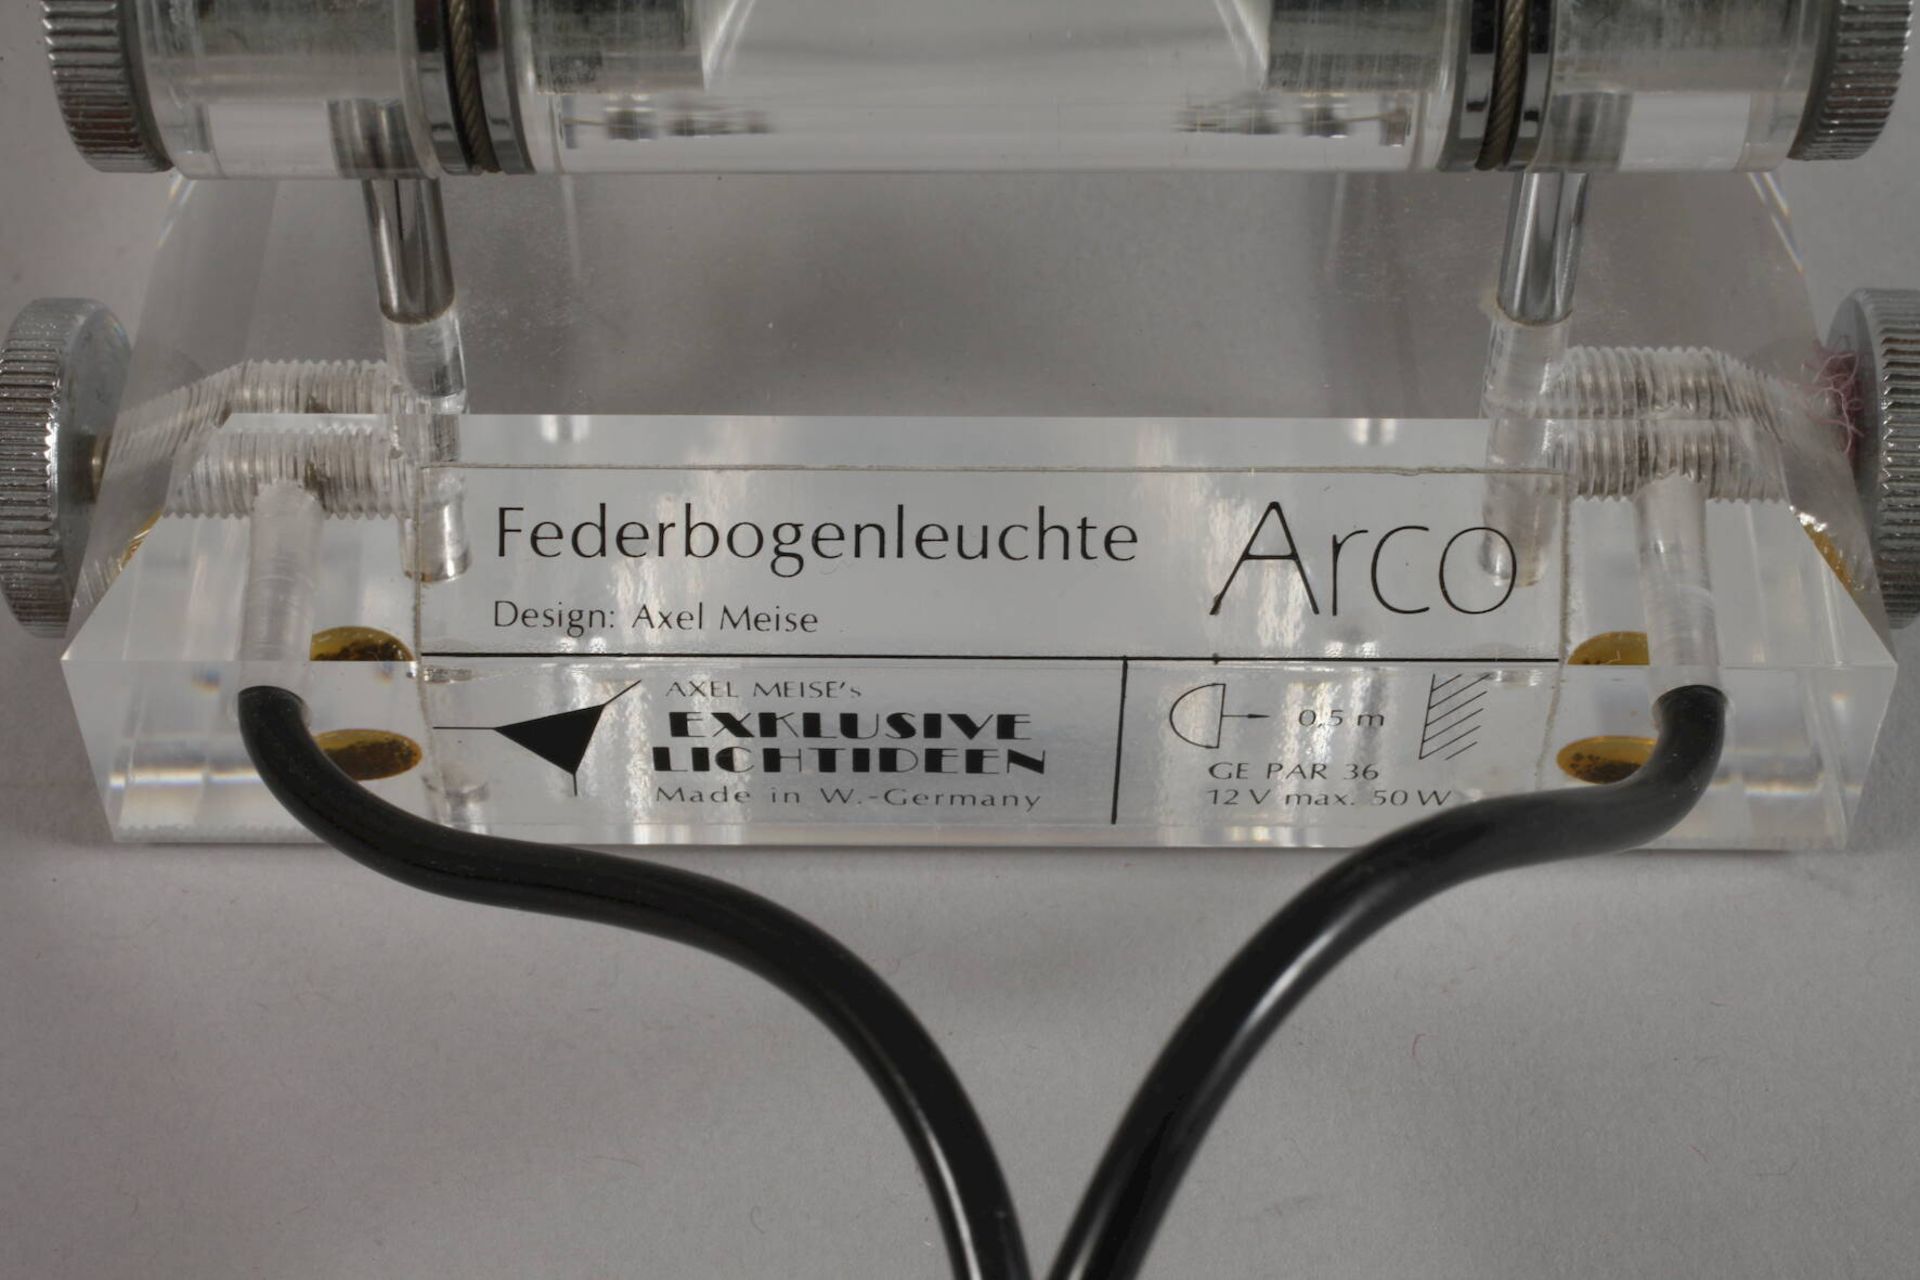 Federbogenleuchte Arco - Image 6 of 6